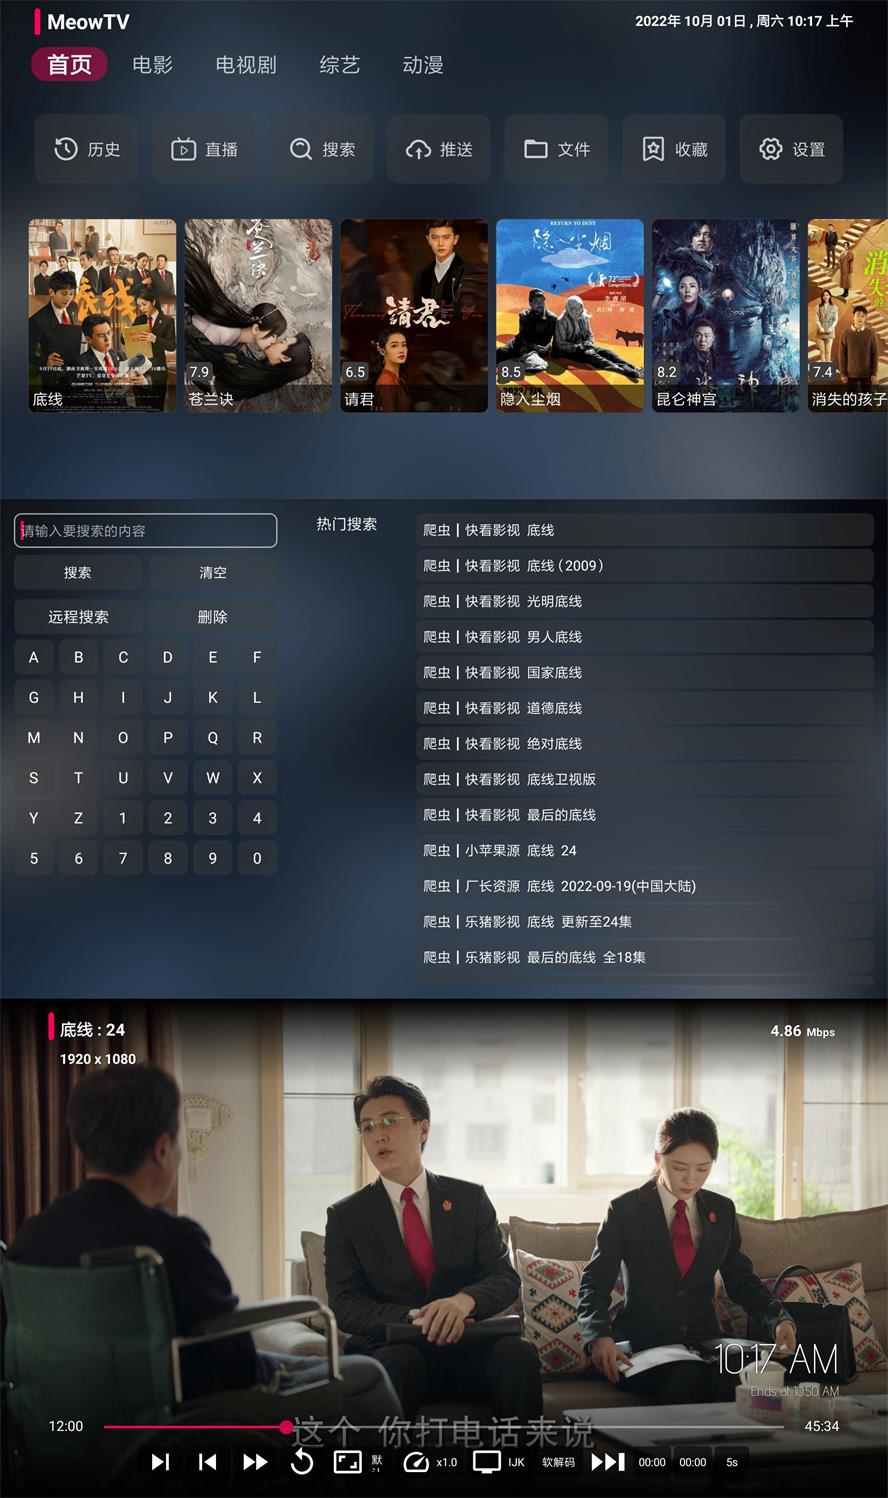 喵影视TV v3.4.0电视盒子内置源双播去广告破解版|手机版+盒子版